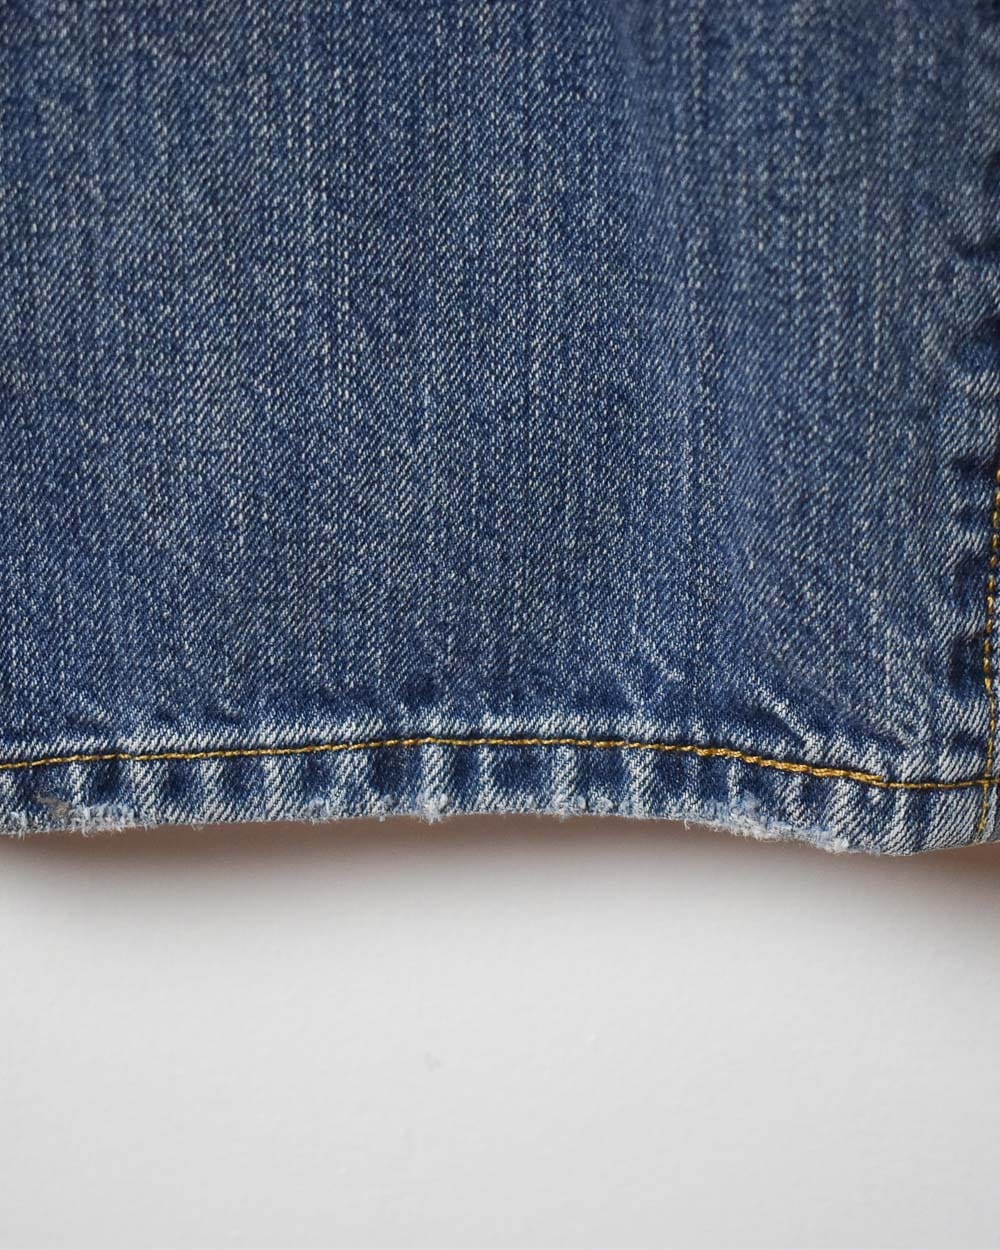 Blue Levi's 501 Jeans - W38 L34